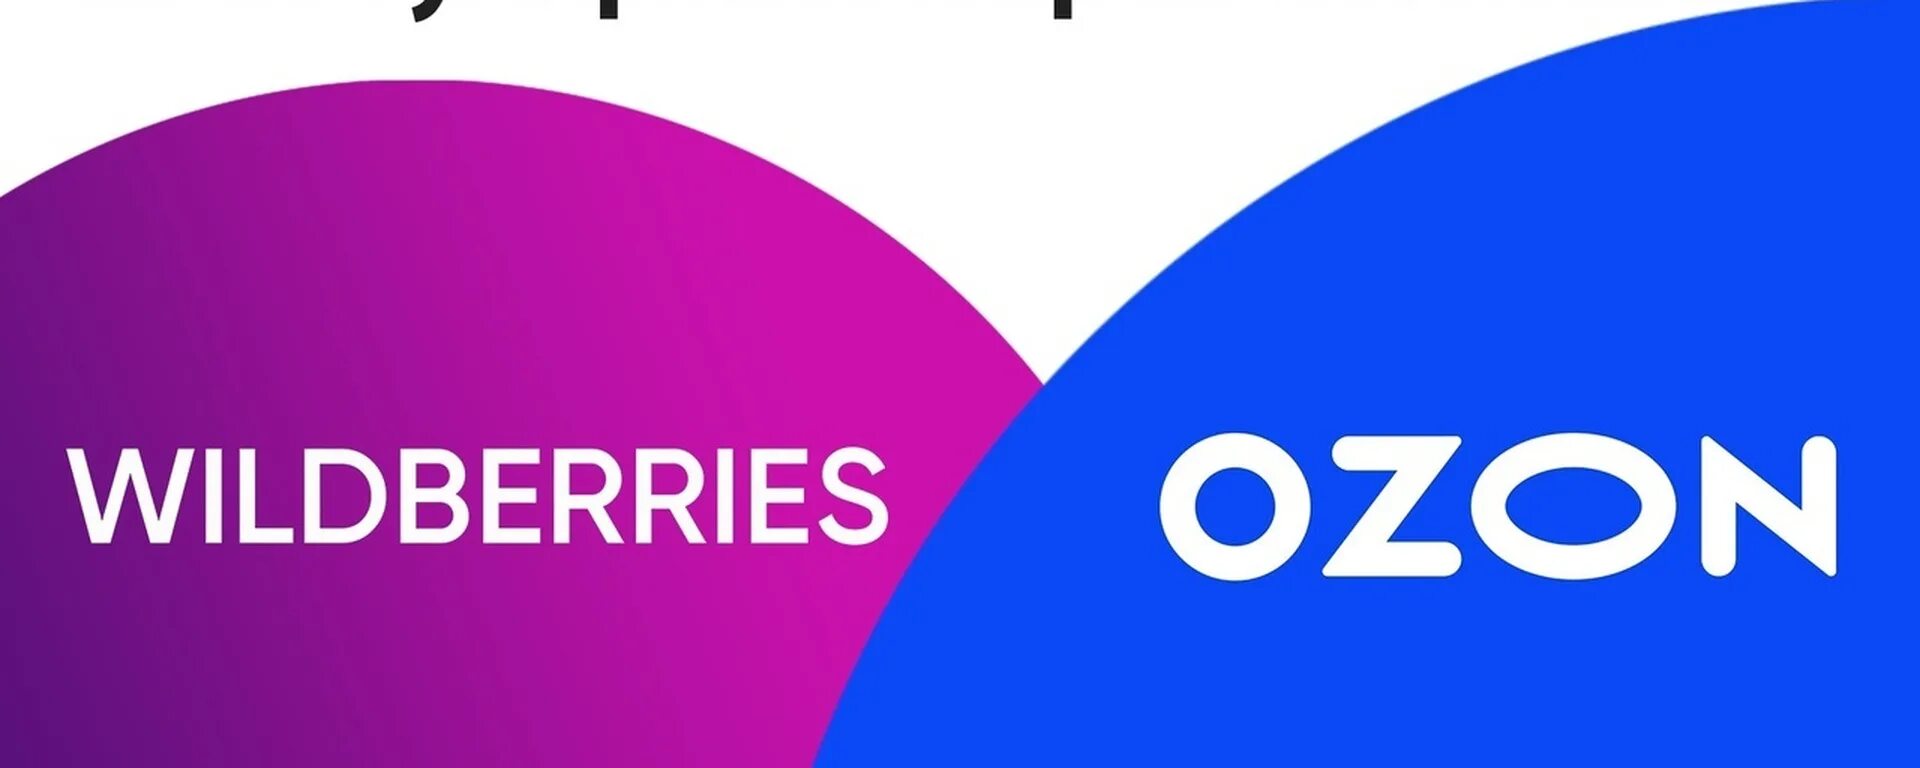 Вб озон отзывы. Озон логотип. Озон Wildberries. Маркетплейсы WB OZON. Вайлдберриз и Озон логотип.